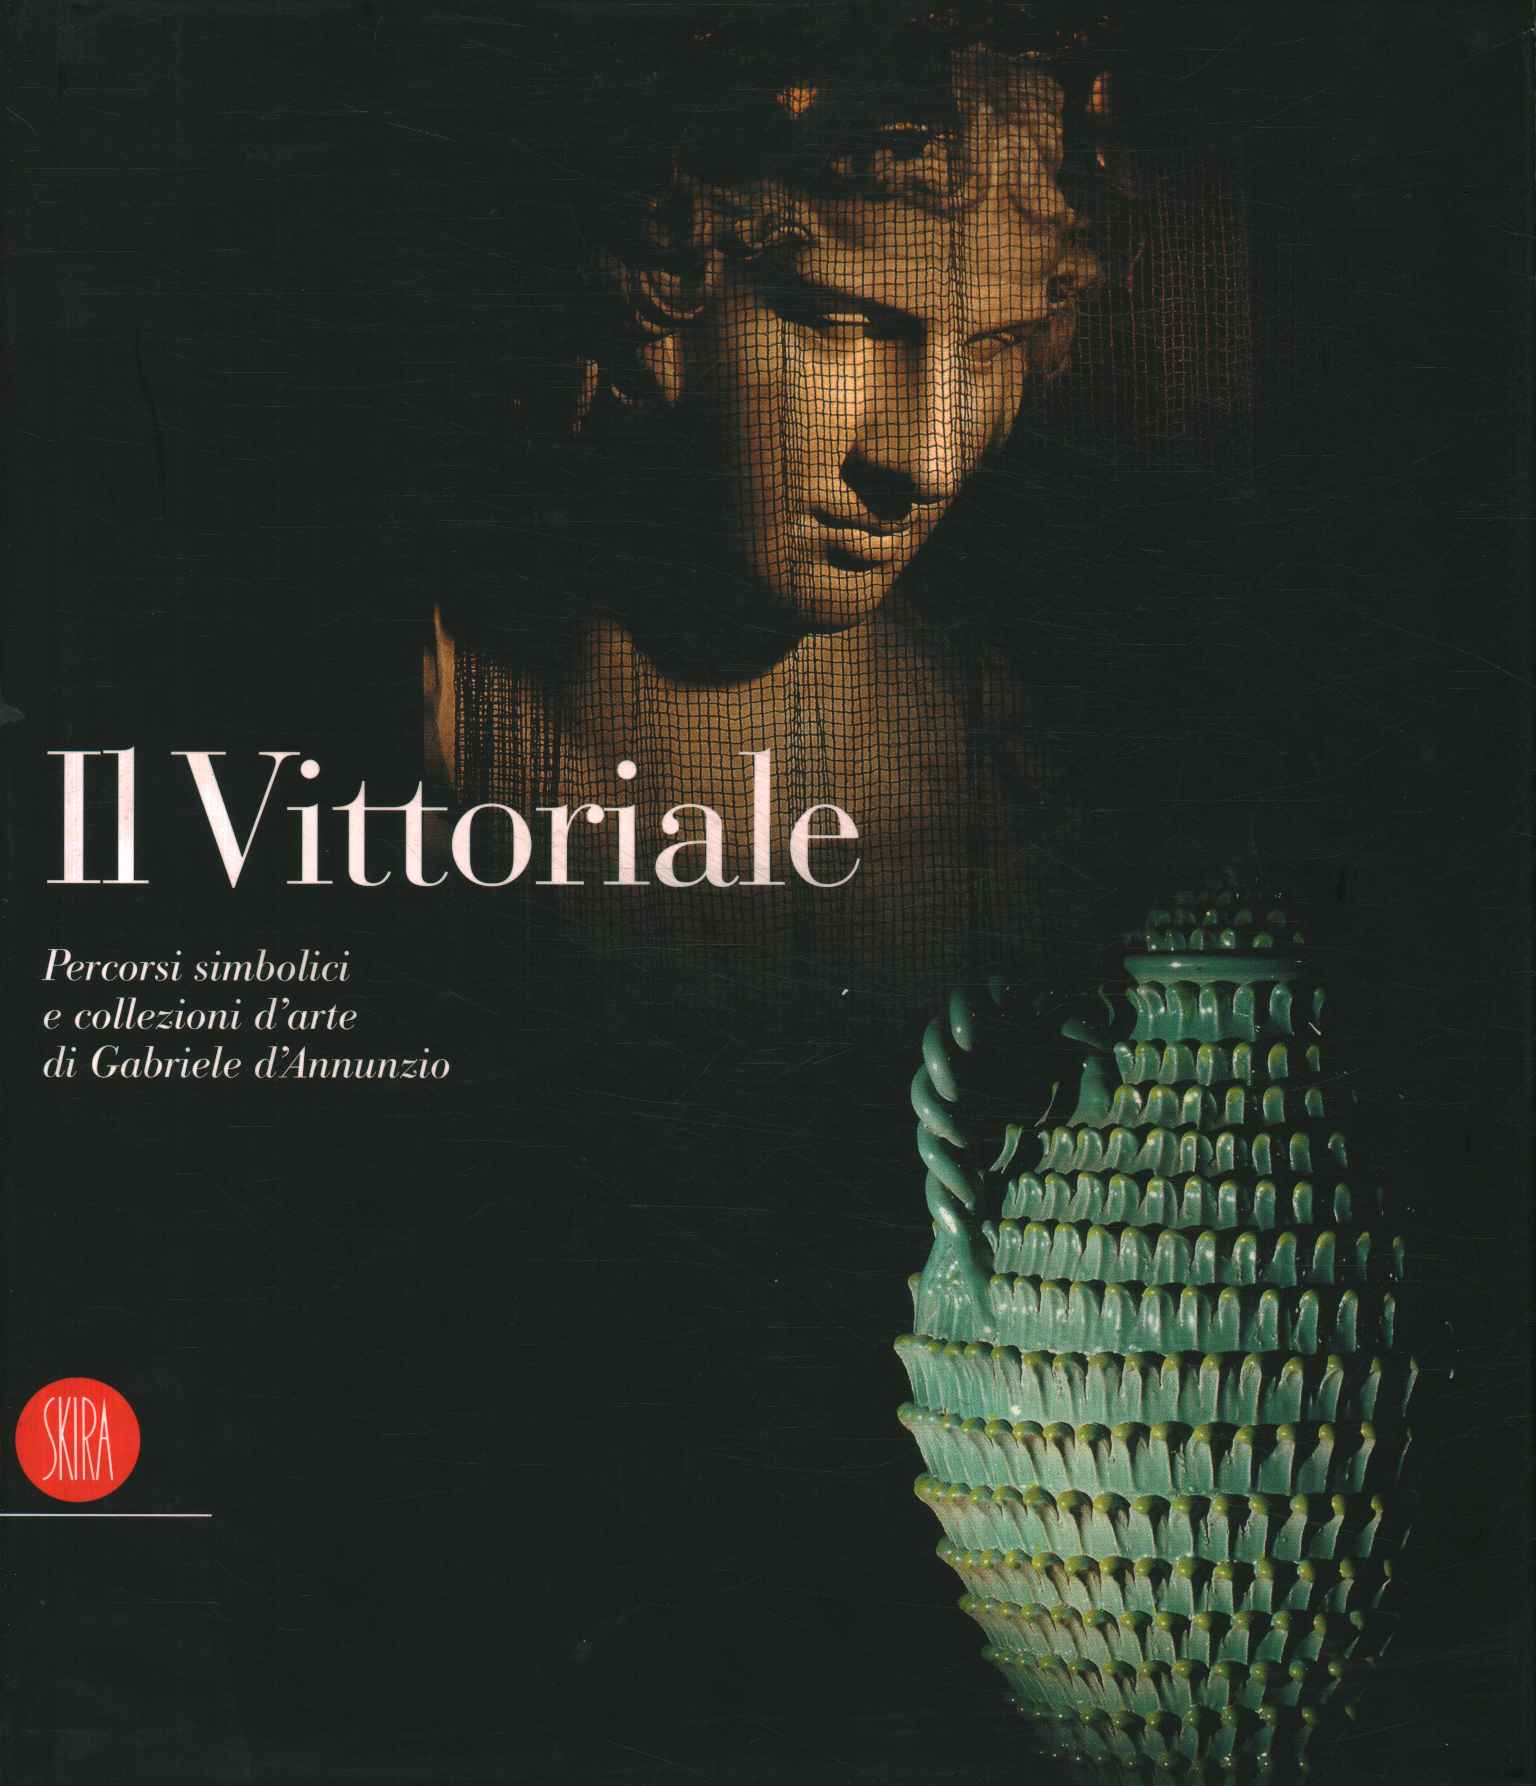 The Vittoriale